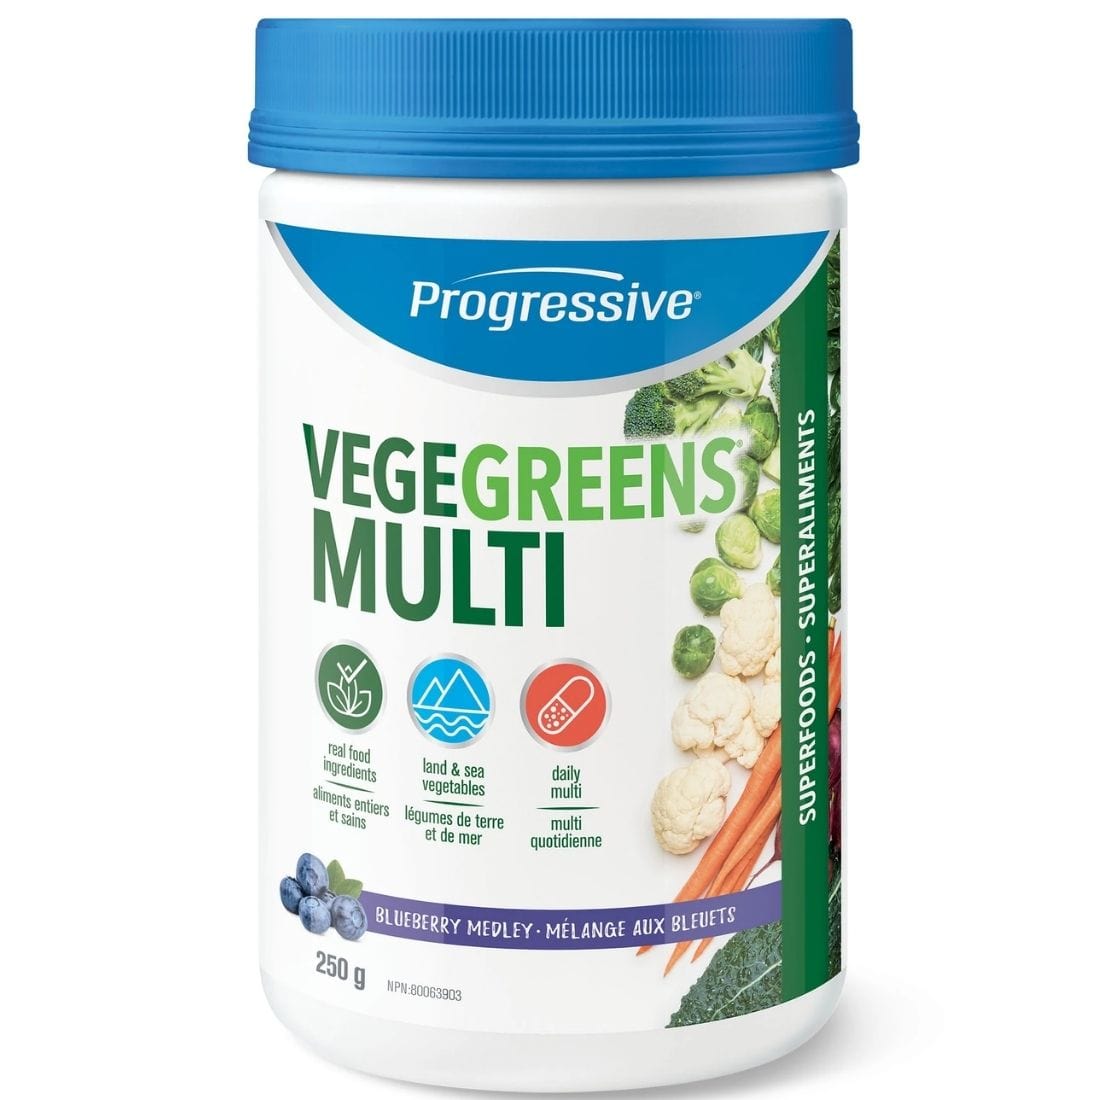 Progressive VegeGreens Multi (6-8 Servings of Fresh Vegetables + Multivitamin)